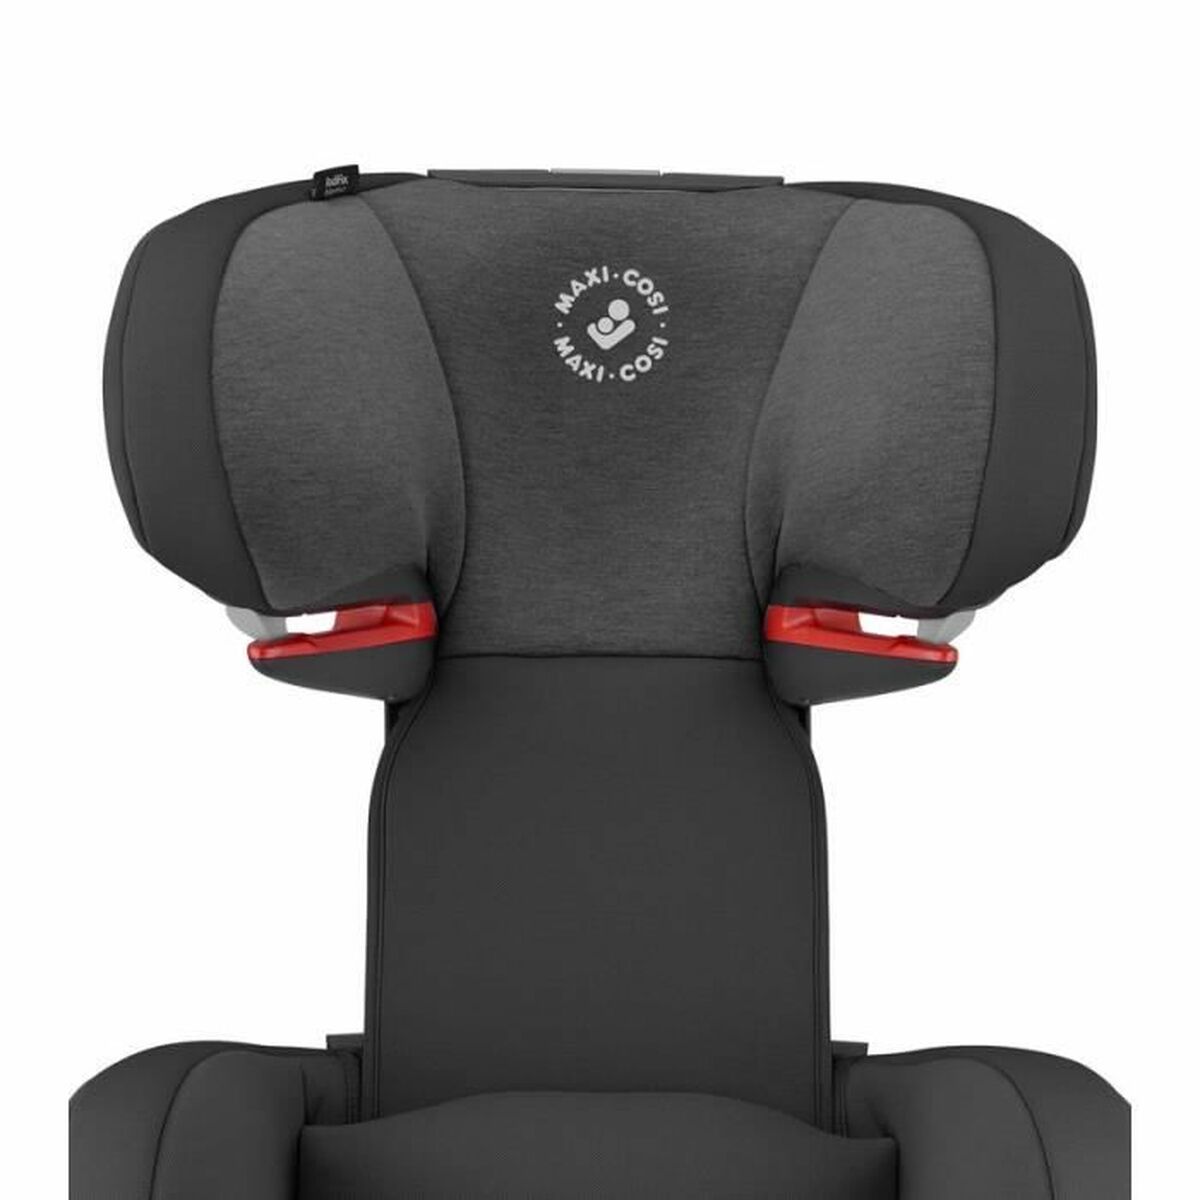 Car Chair RodiFix AirProtect (51 x 49 x 63,5 cm)